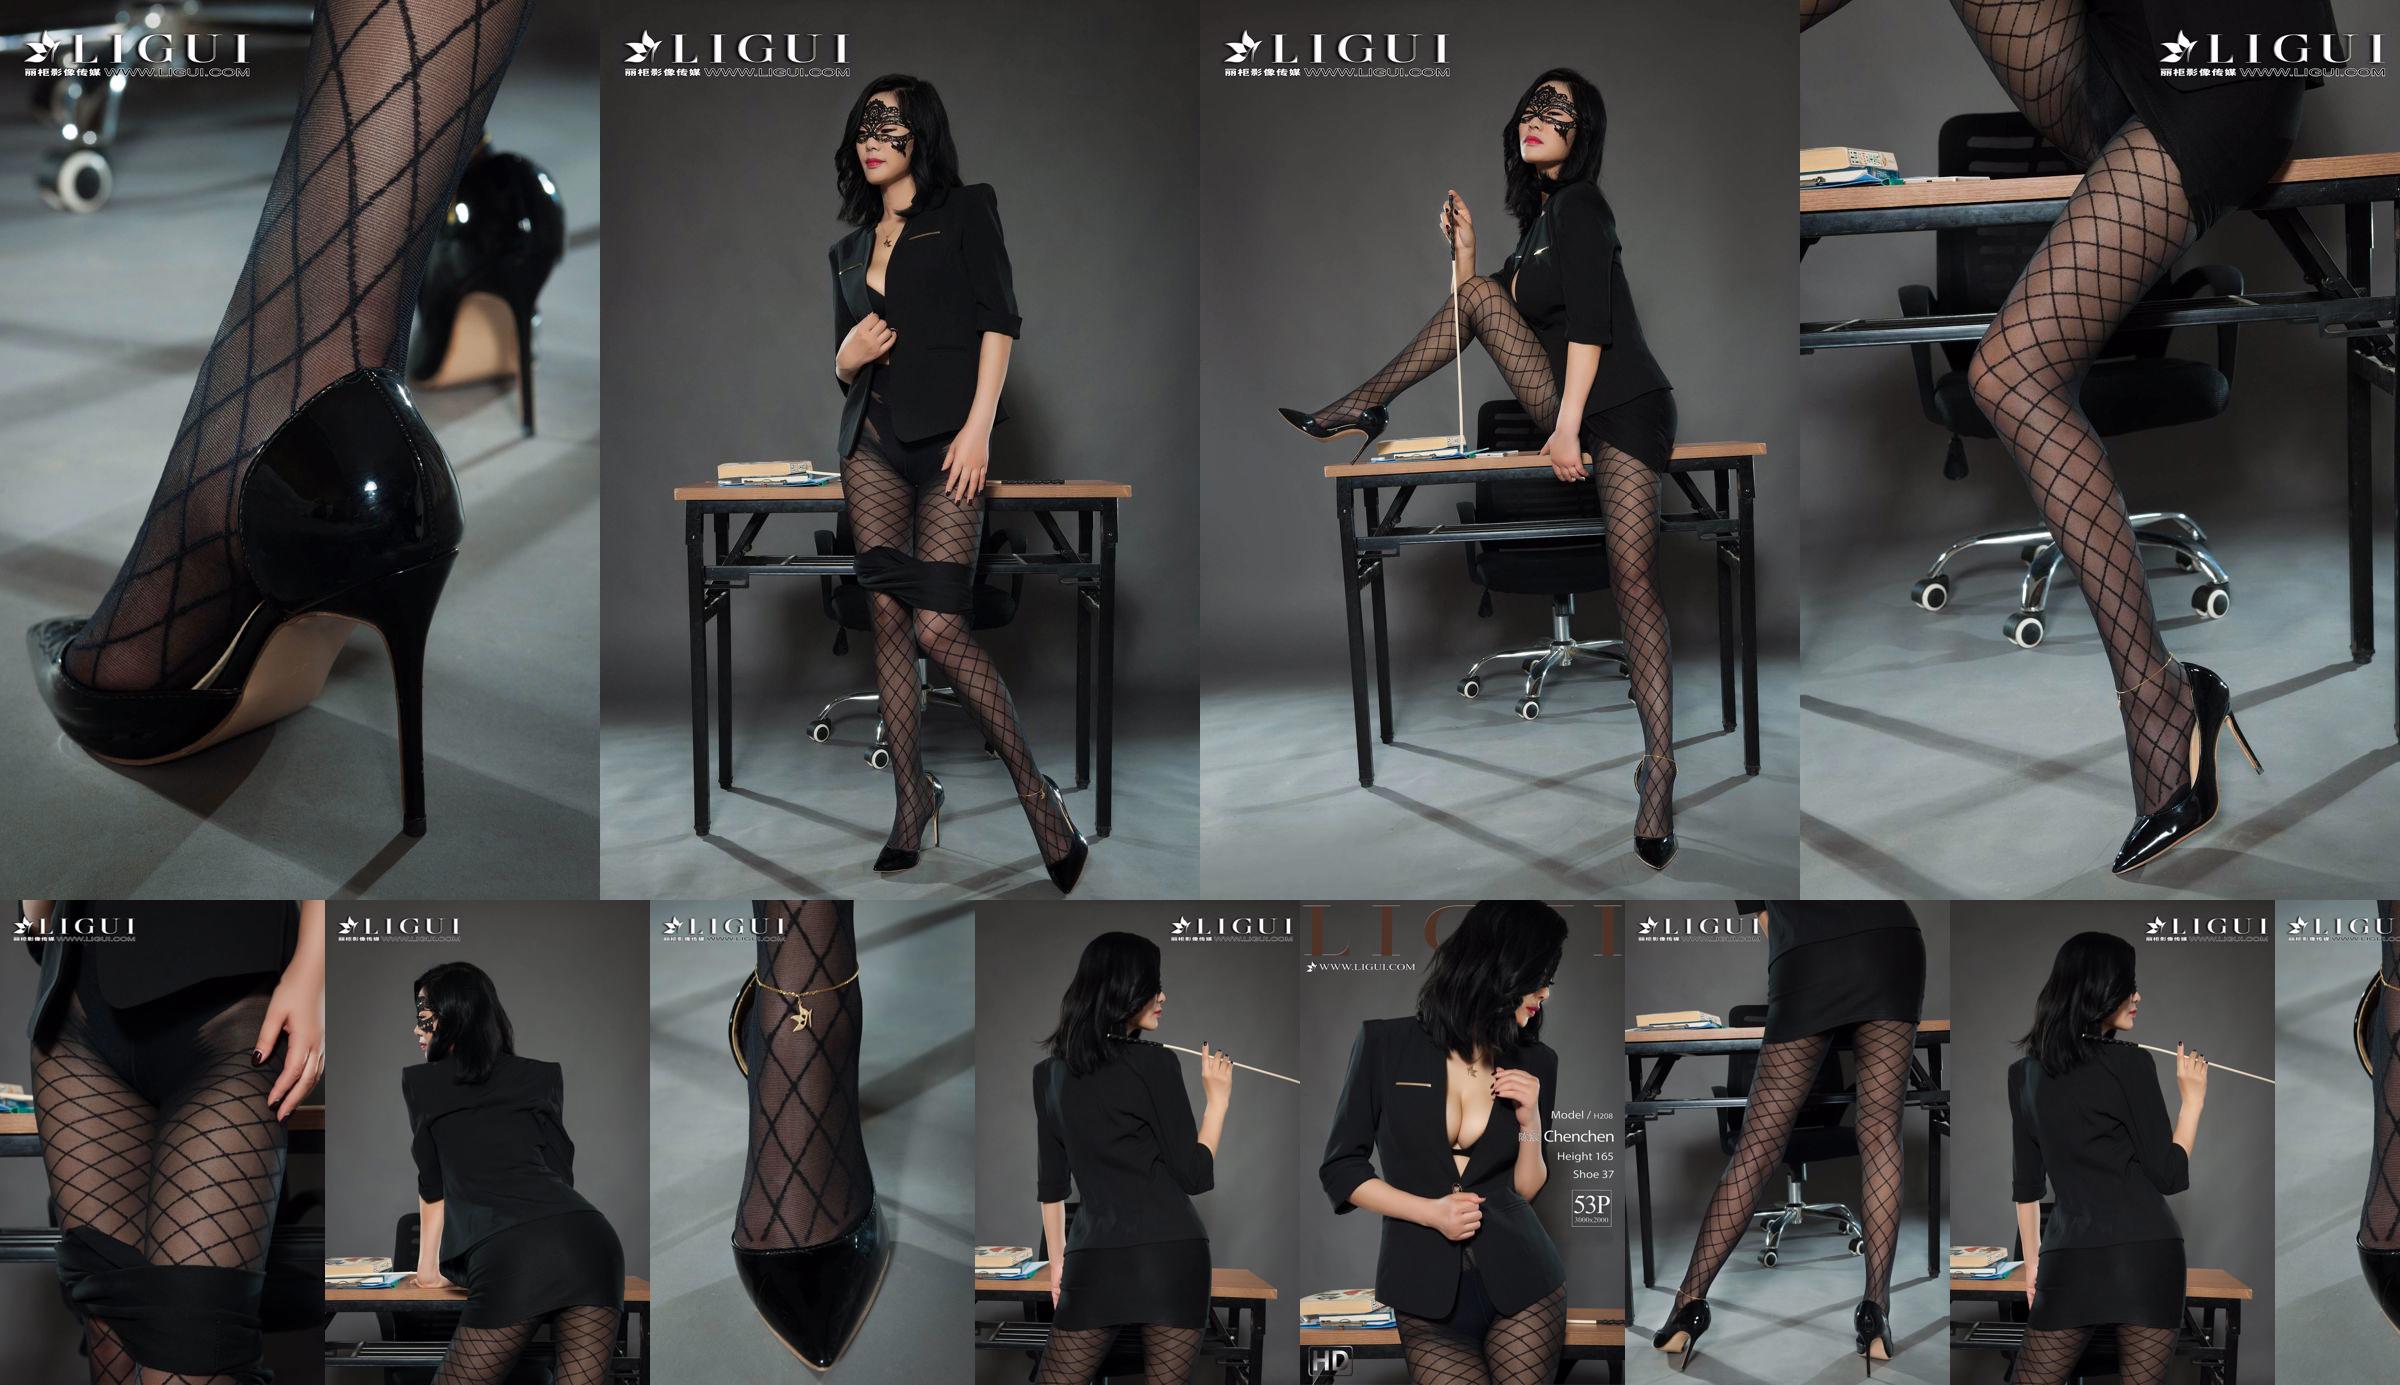 Modelo de pierna Chen Chen "Black Silk Milf" [Ligui Liguil] Belleza de Internet No.4a2ebe Página 1